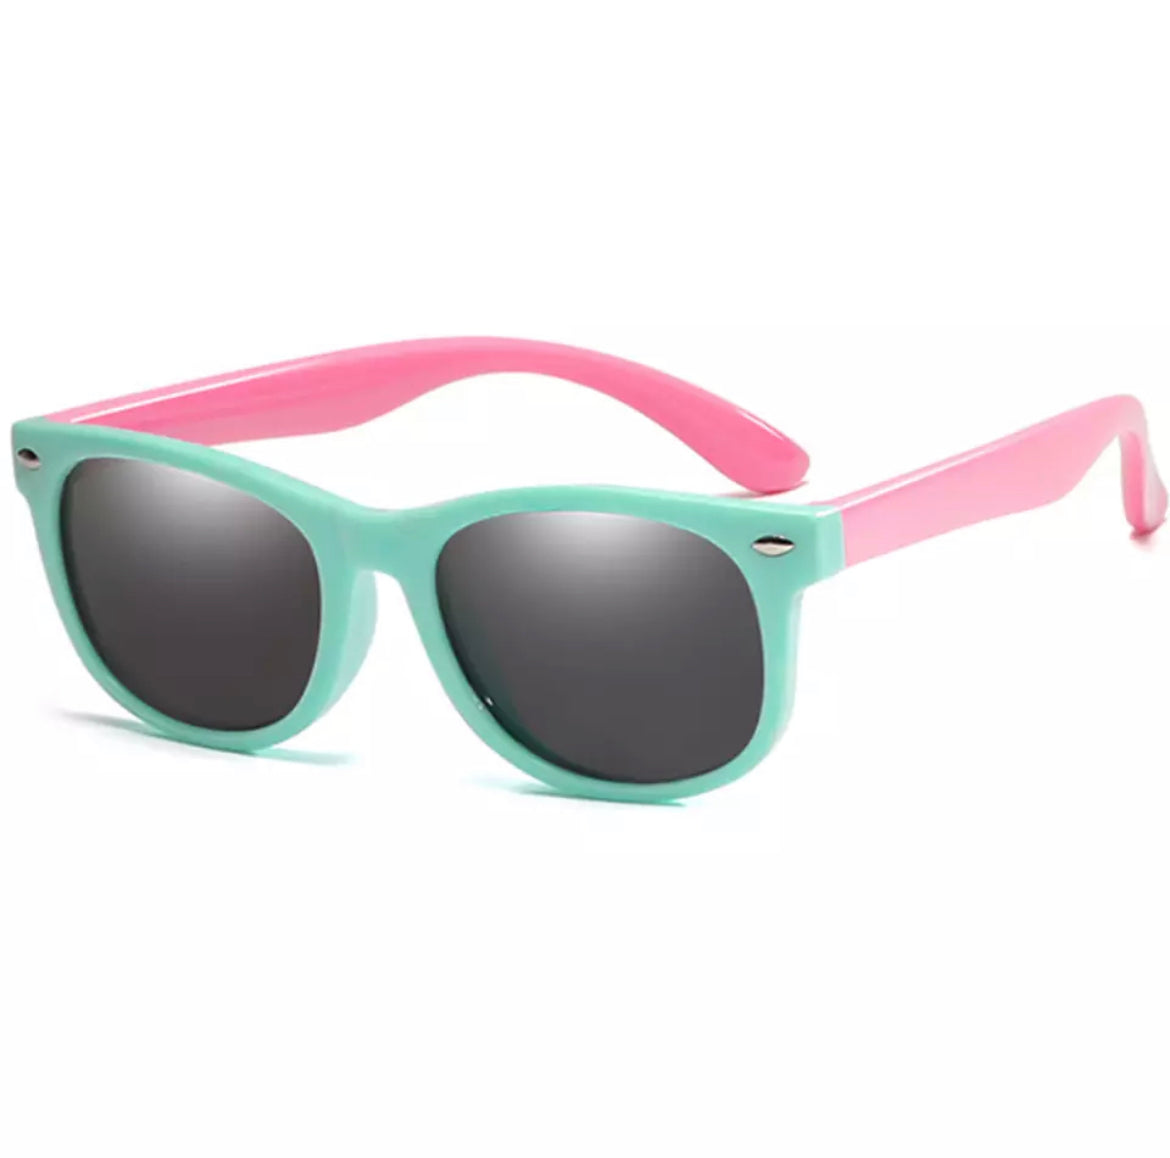 Ultra Flexible Sunglasses - Pink & Mint.